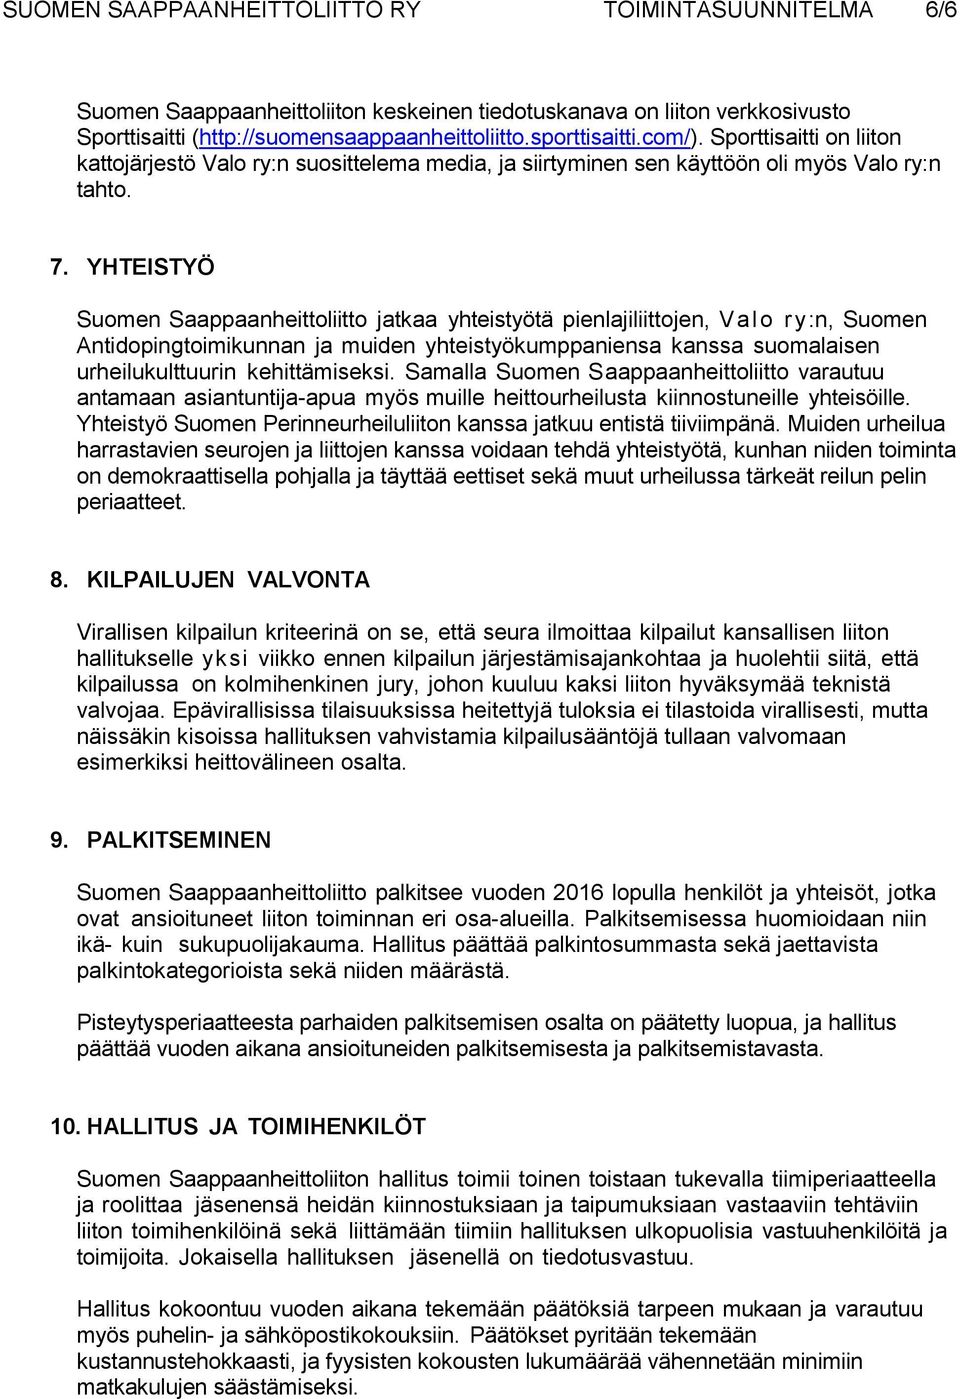 YHTEISTYÖ Suomen Saappaanheittoliitto jatkaa yhteistyötä pienlajiliittojen, Valo ry:n, Suomen Antidopingtoimikunnan ja muiden yhteistyökumppaniensa kanssa suomalaisen urheilukulttuurin kehittämiseksi.